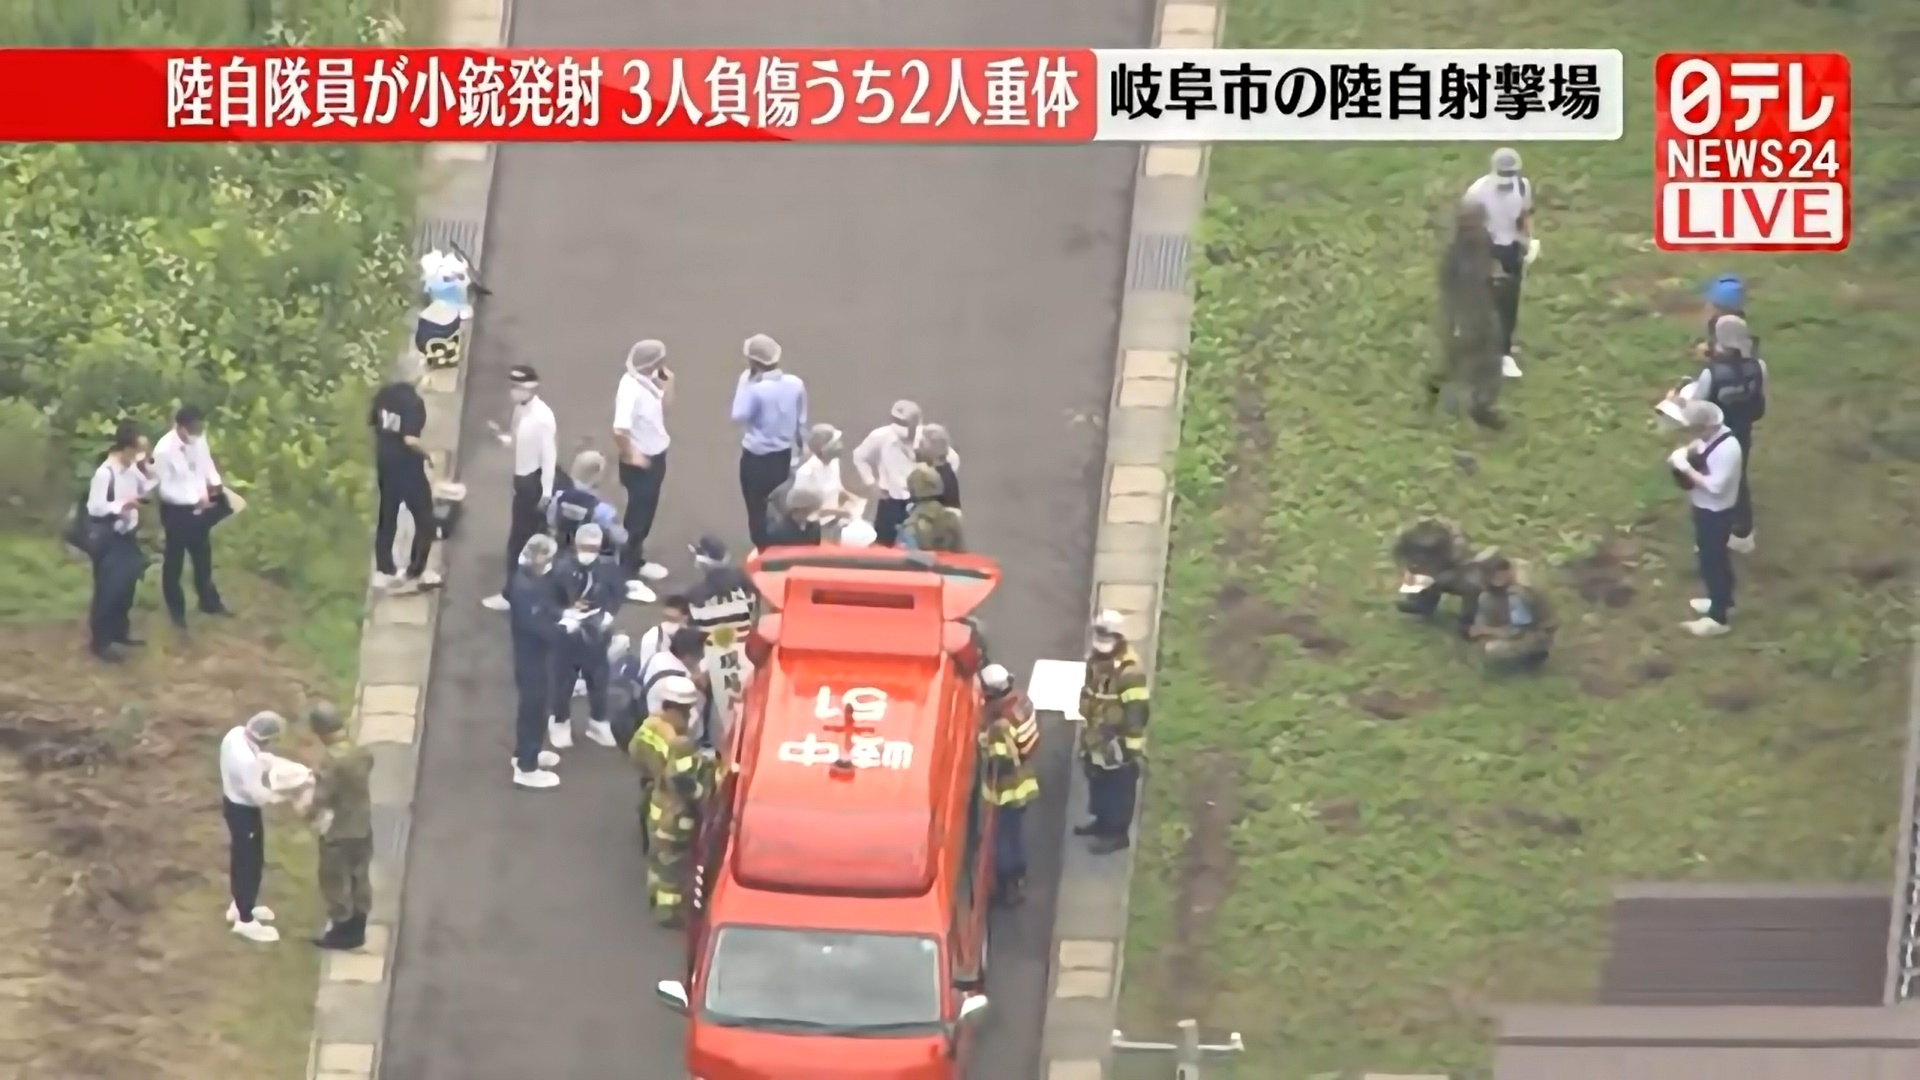 일본의 자위대 사격장에서 총격 사건이 발생해 자위대원 1명이 숨지고 2명이 다쳤다고 14일 NHK 등 현지언론이 보도했다. 2023.6.14 일본NTV 캡쳐